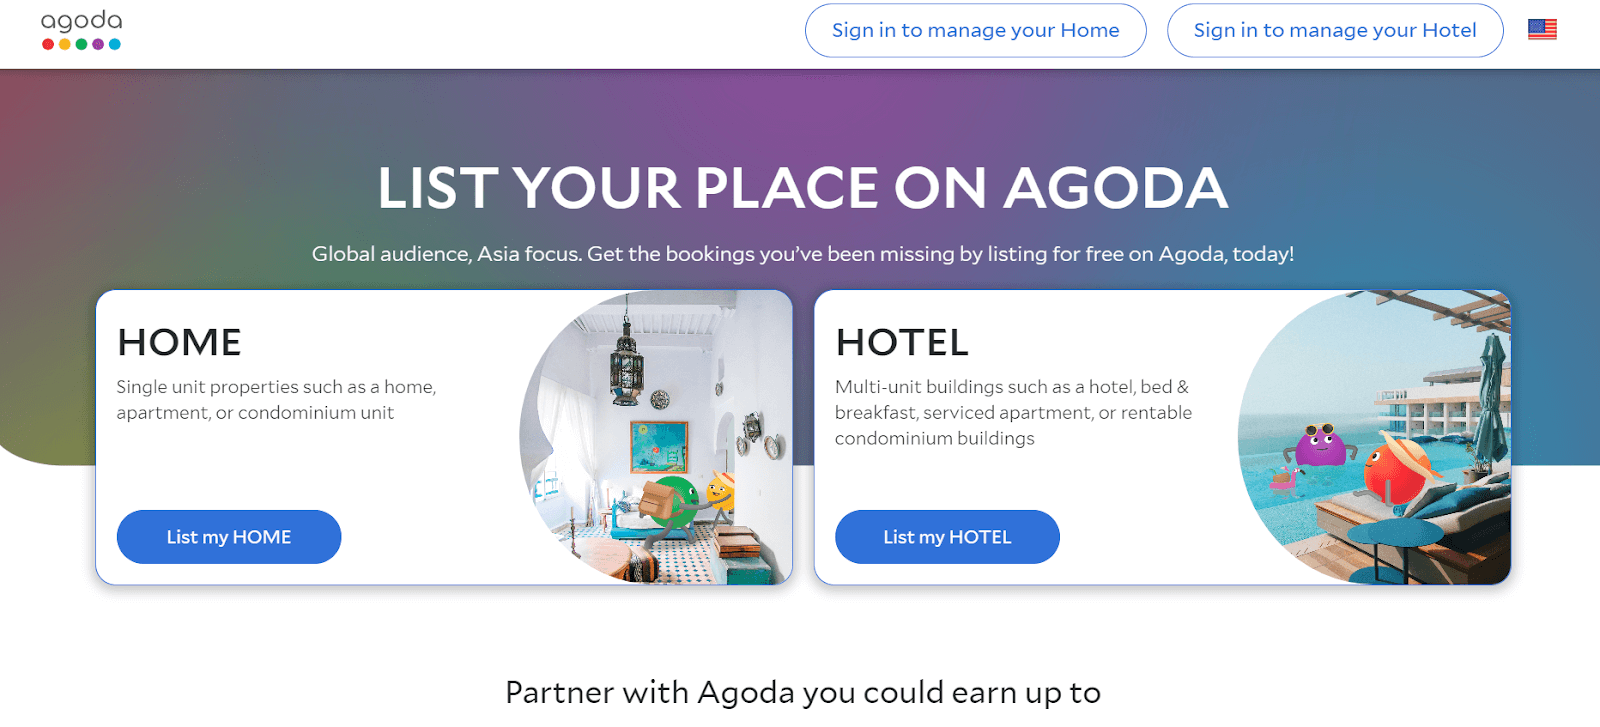 Agoda listing How to set up hotel listing on Agoda Image 3